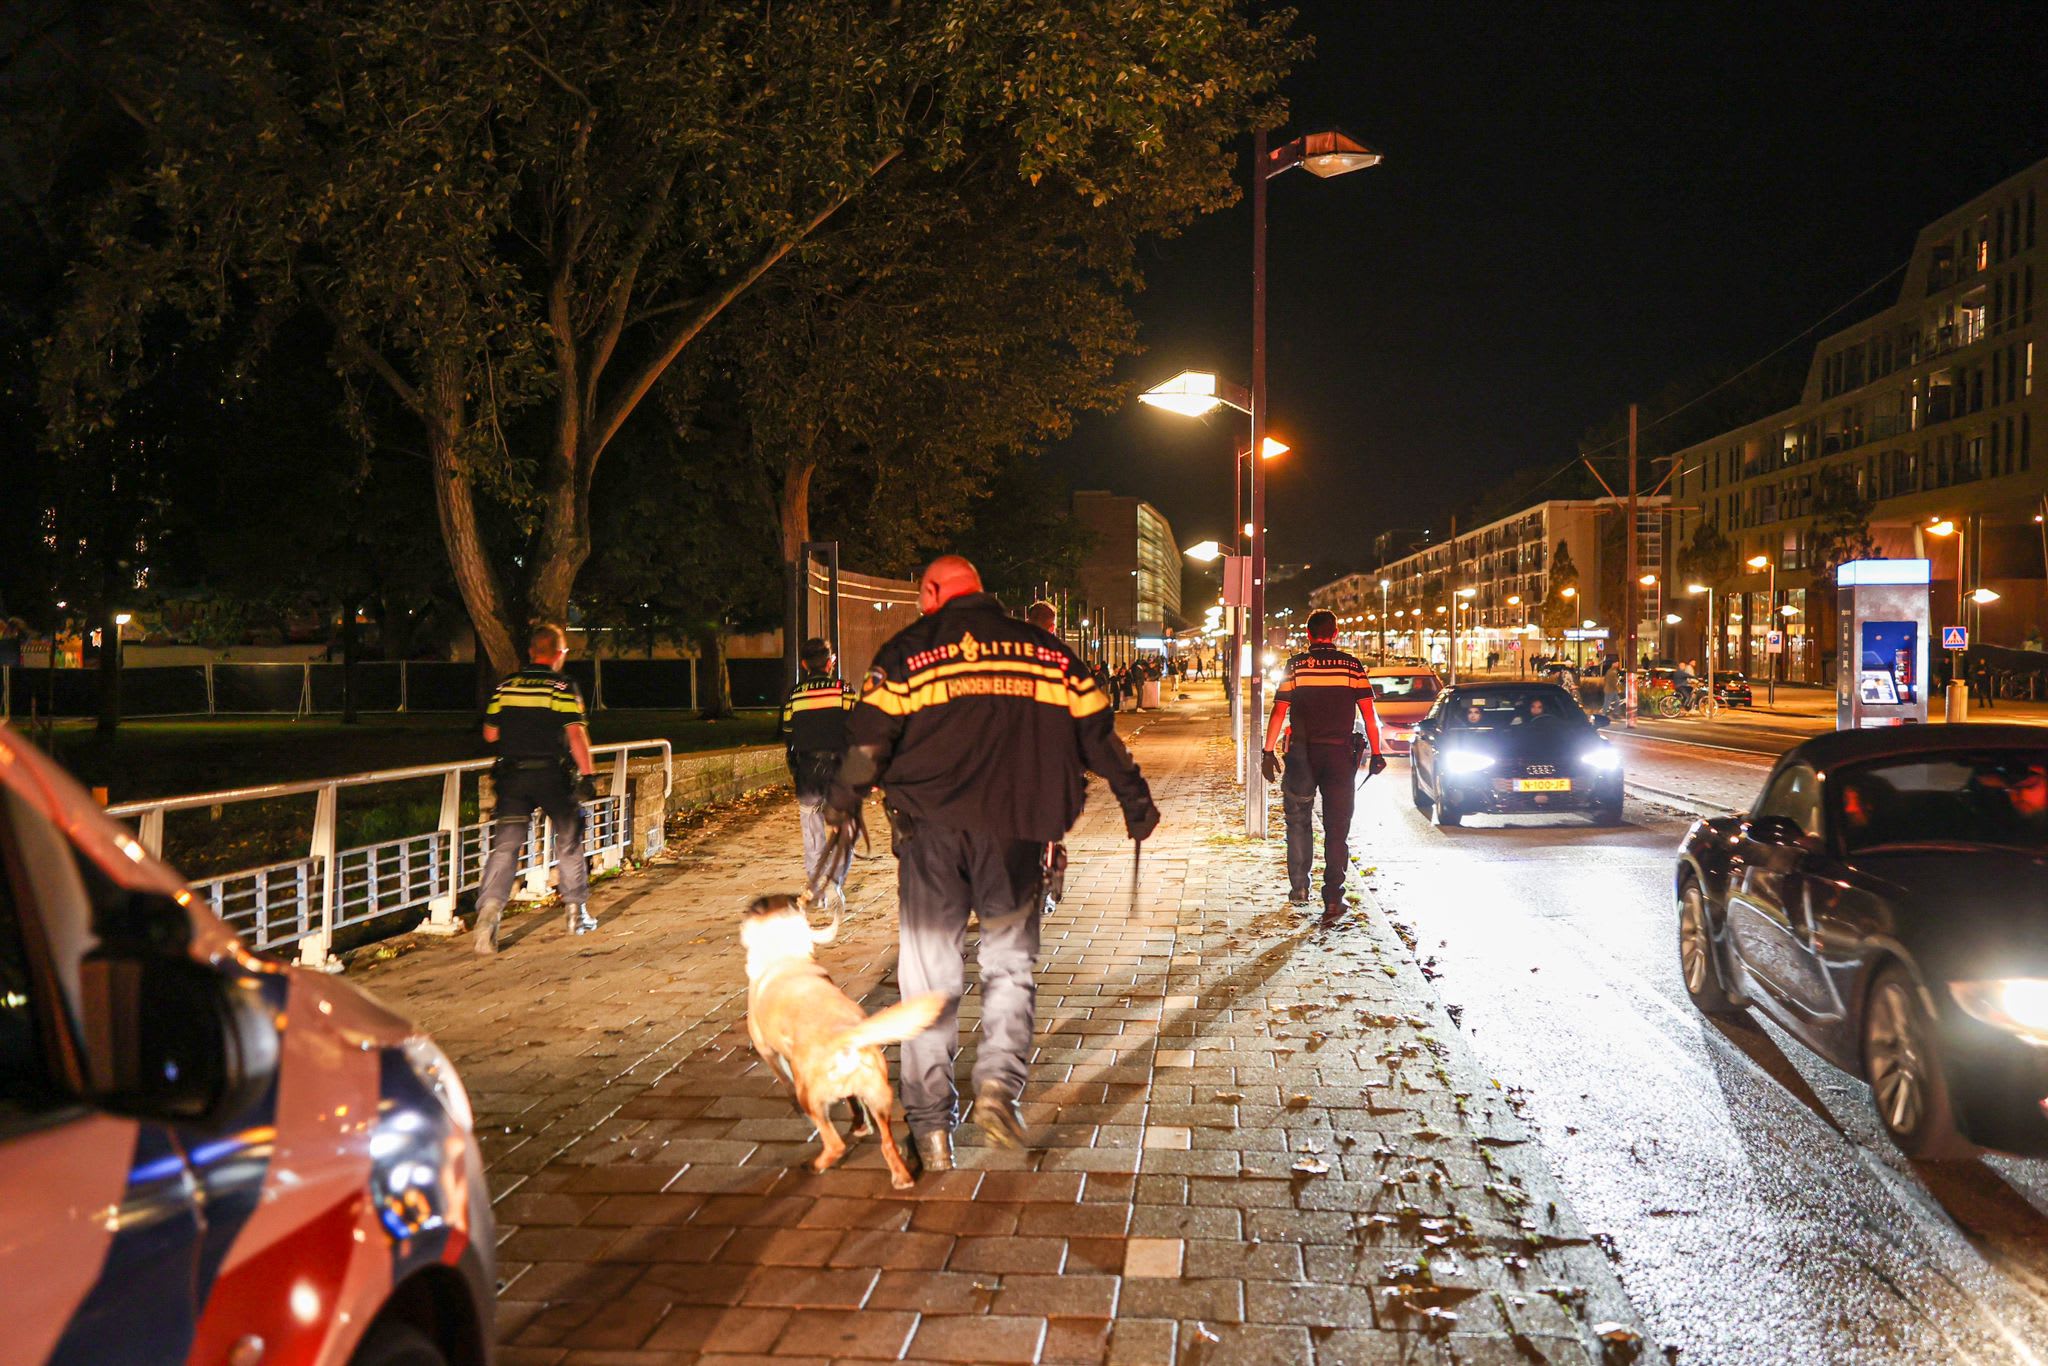 Stevige politie-inzet na nacht met 26 aanhoudingen rondom kermis Osdorp